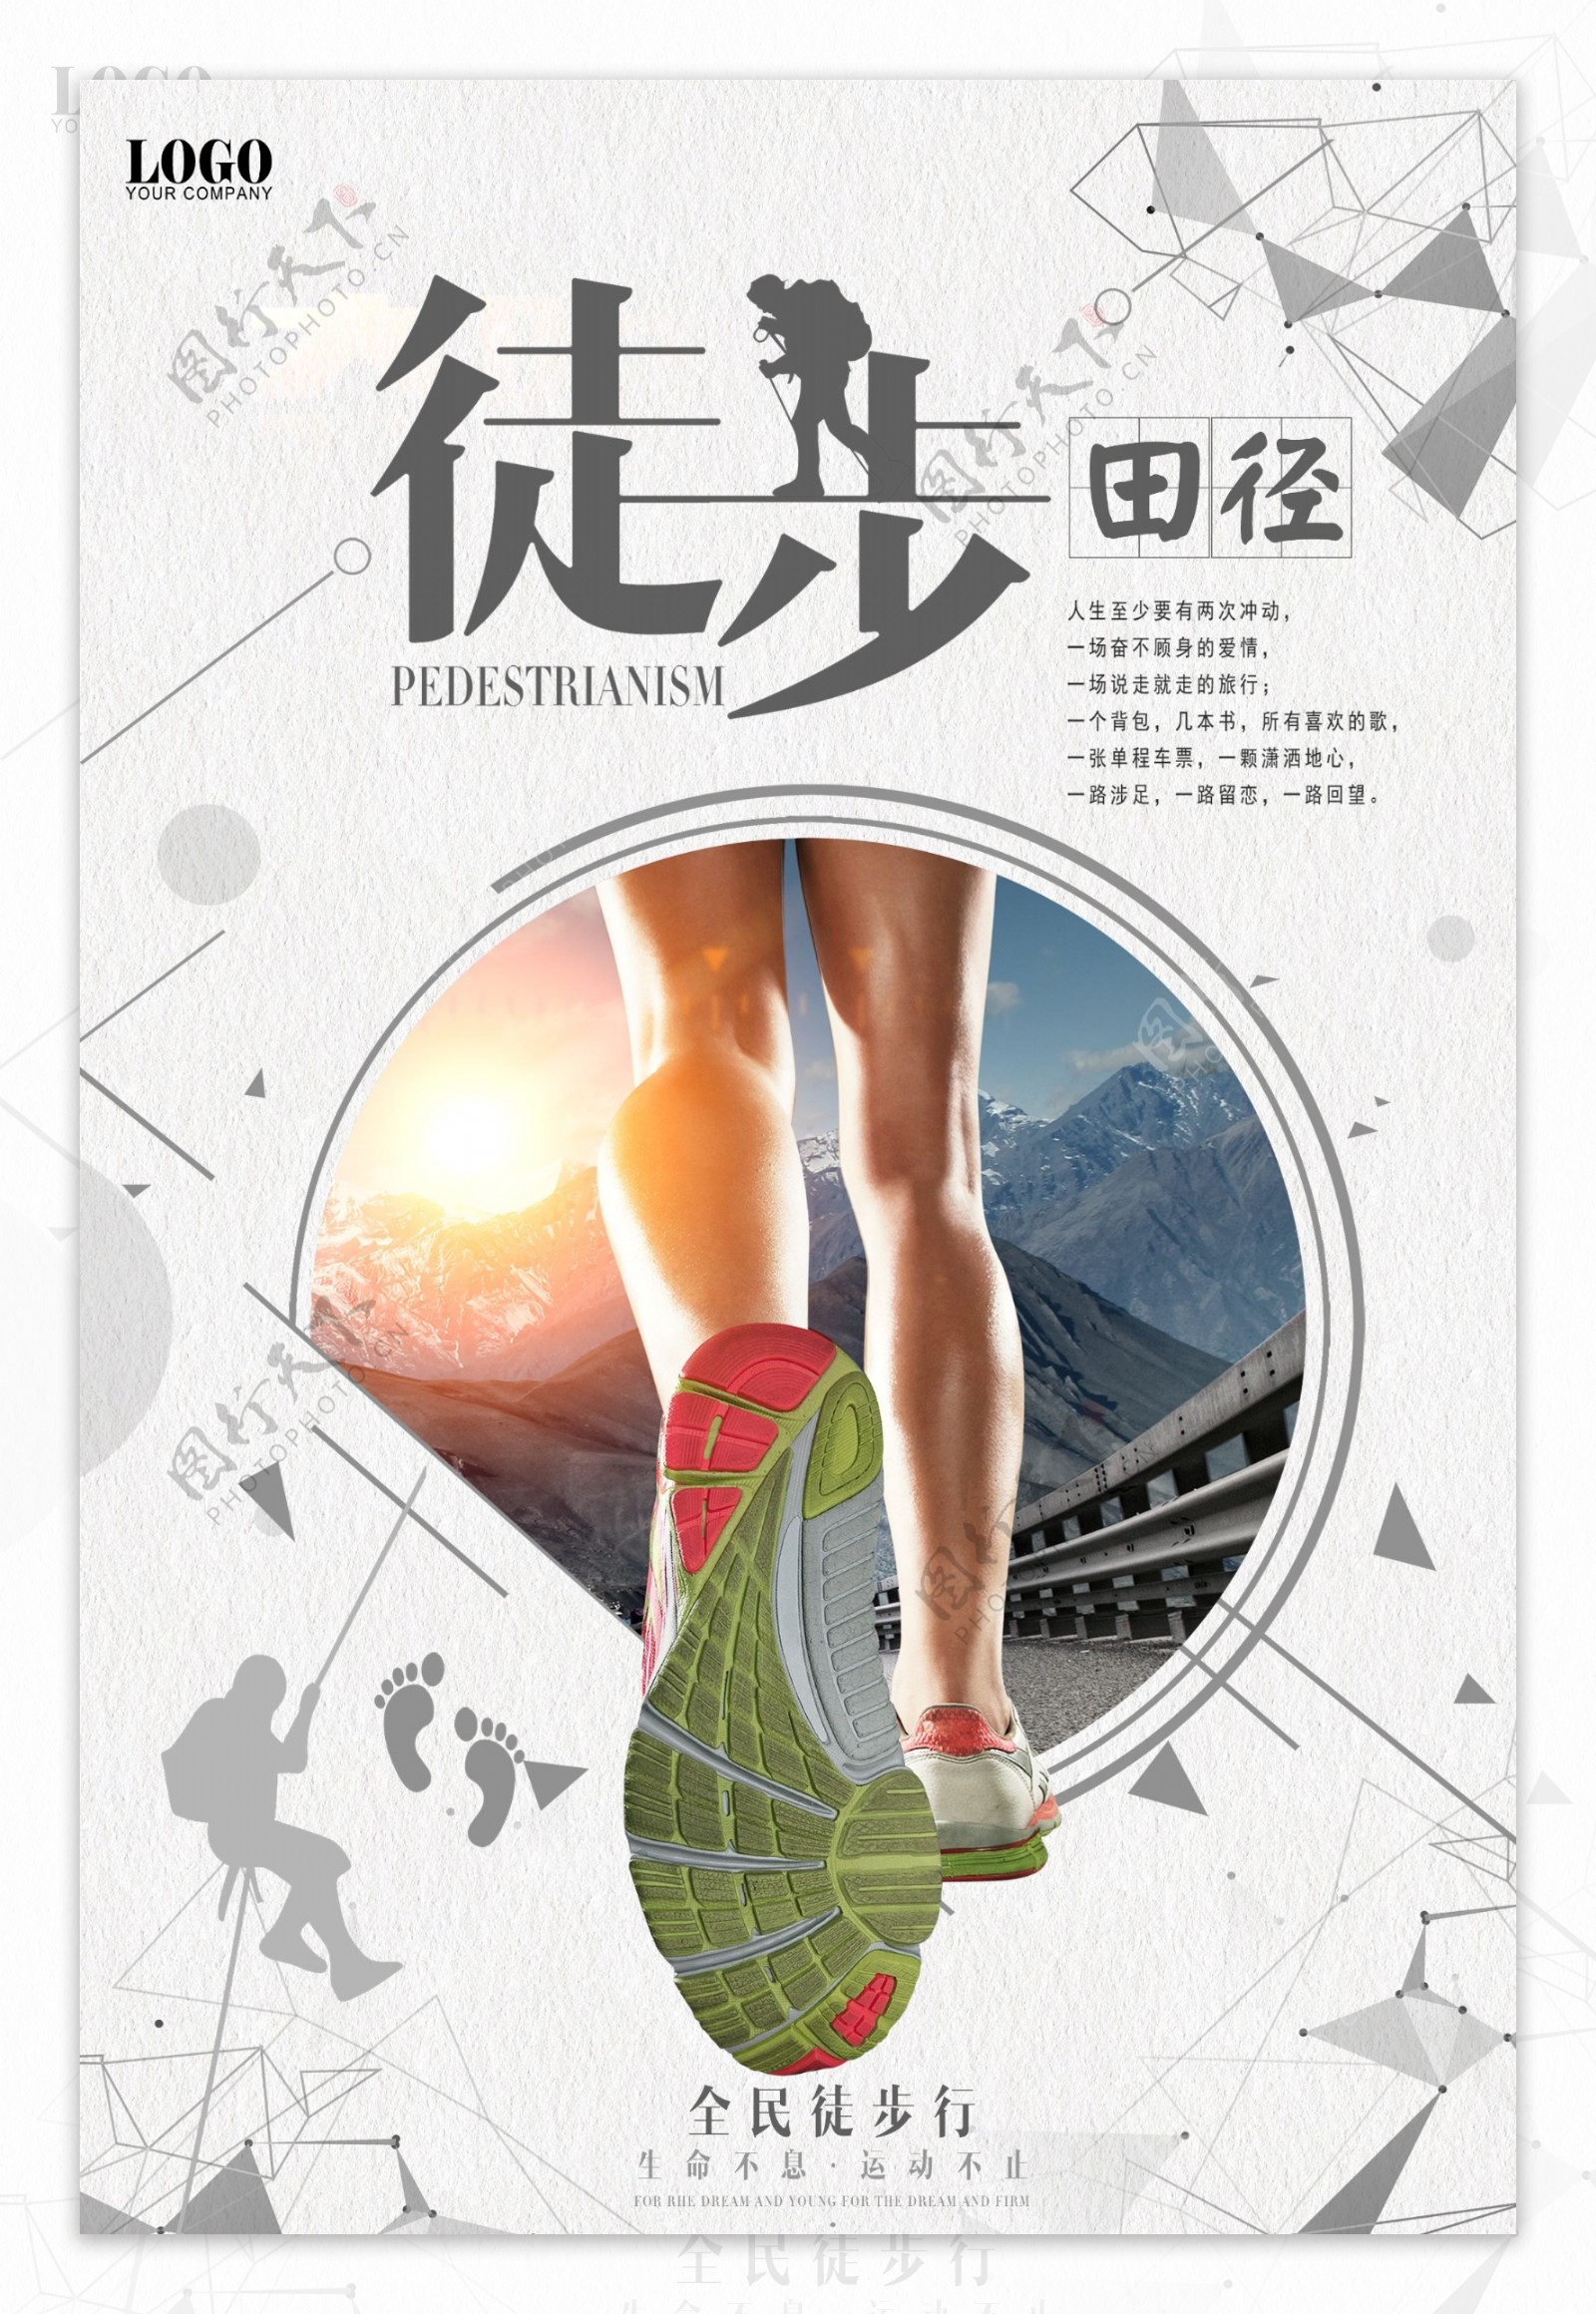 简约田径运动会宣传海报设计